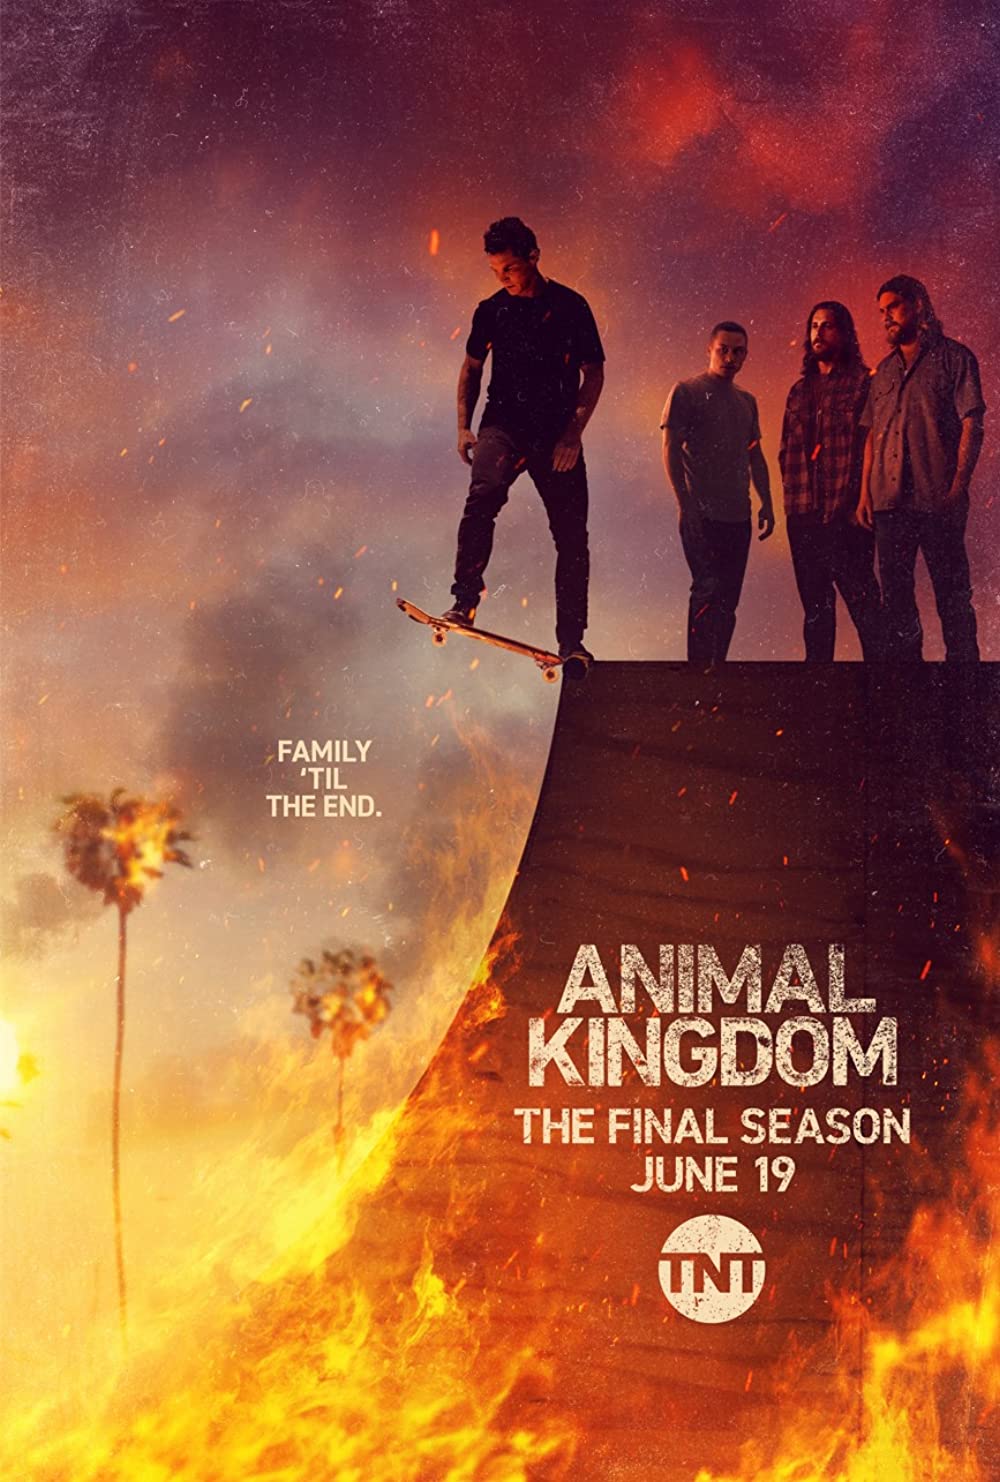 ดูหนังออนไลน์ Animal Kingdom Season 1 EP.3 แอนนิเมิล คิงด้อม ซีซั่น 1 ตอนที่ 3 (ซับไทย)